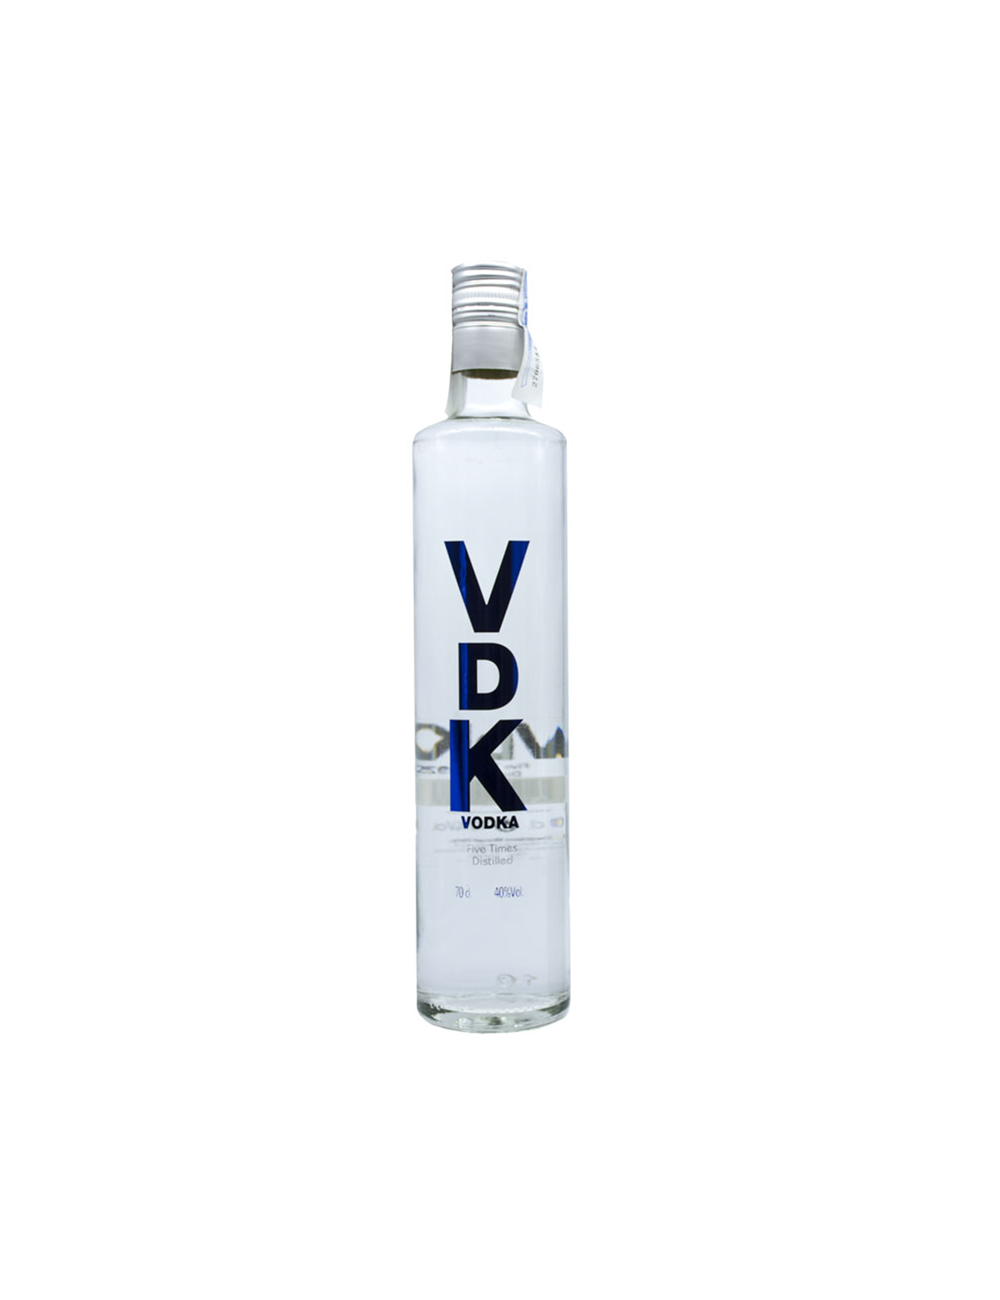 Vodka Premium Artesanal VDK